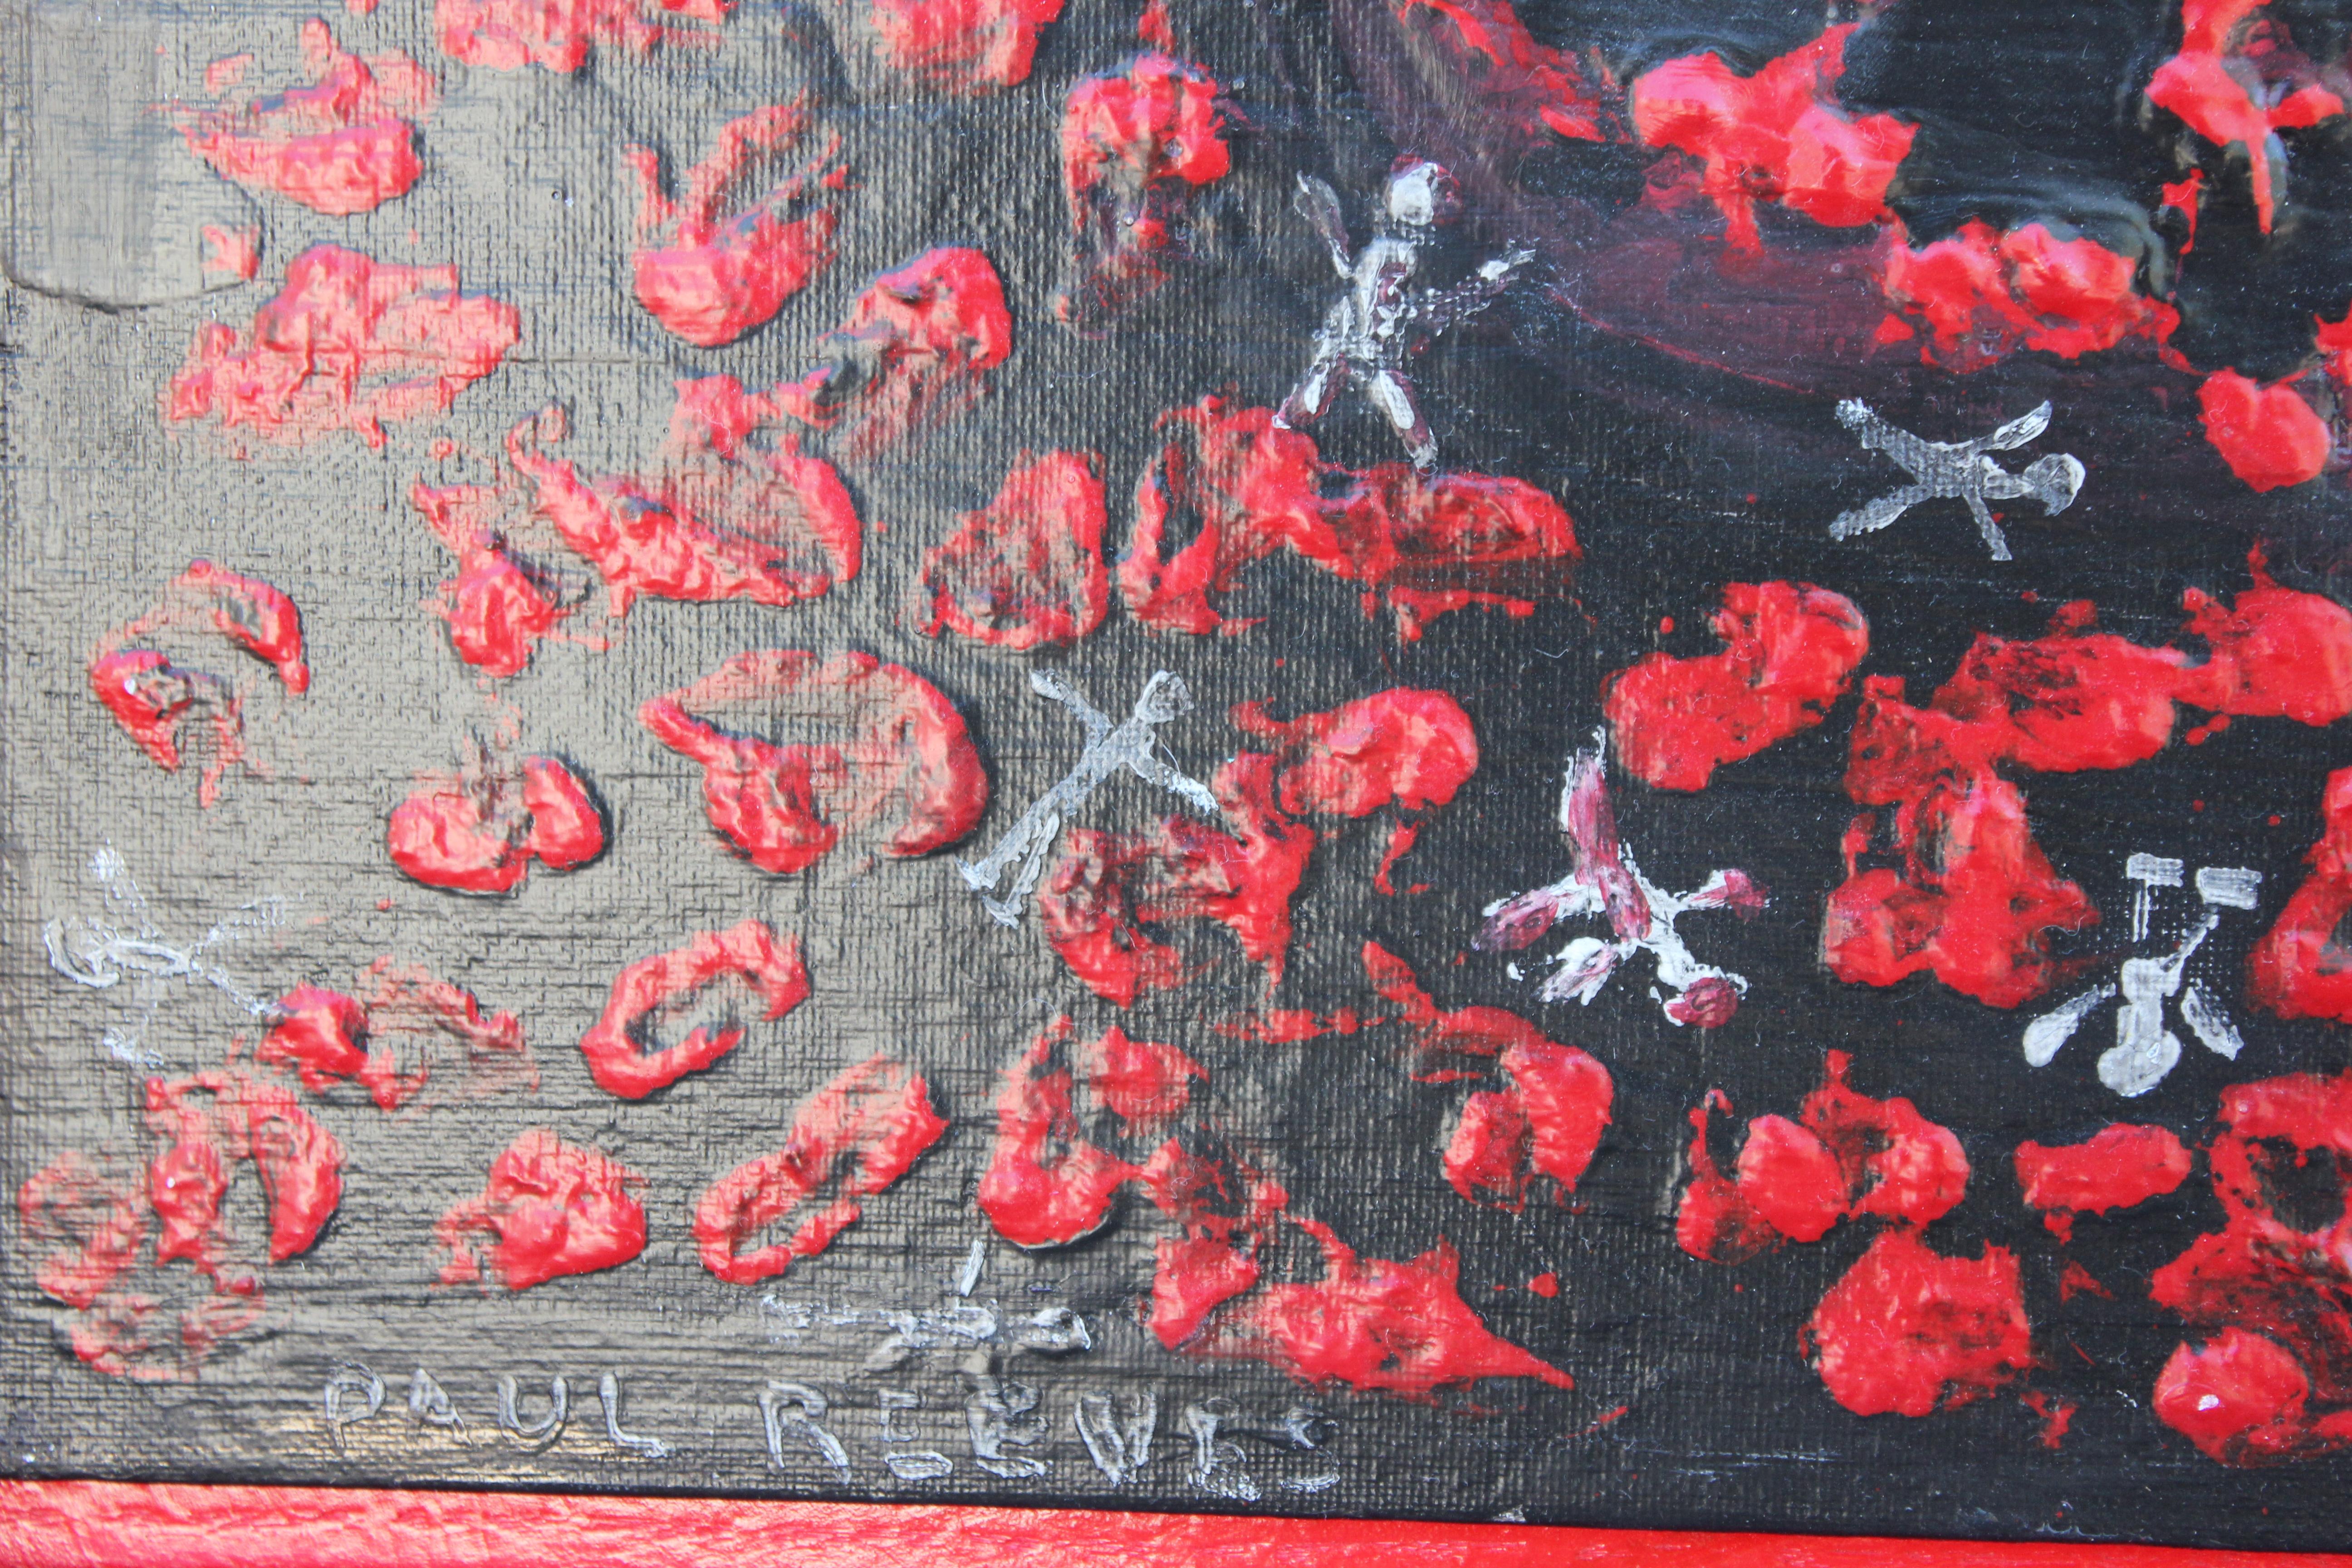 « Pollution », peinture abstraite rouge et noire - Gris Figurative Painting par Paul Reeves